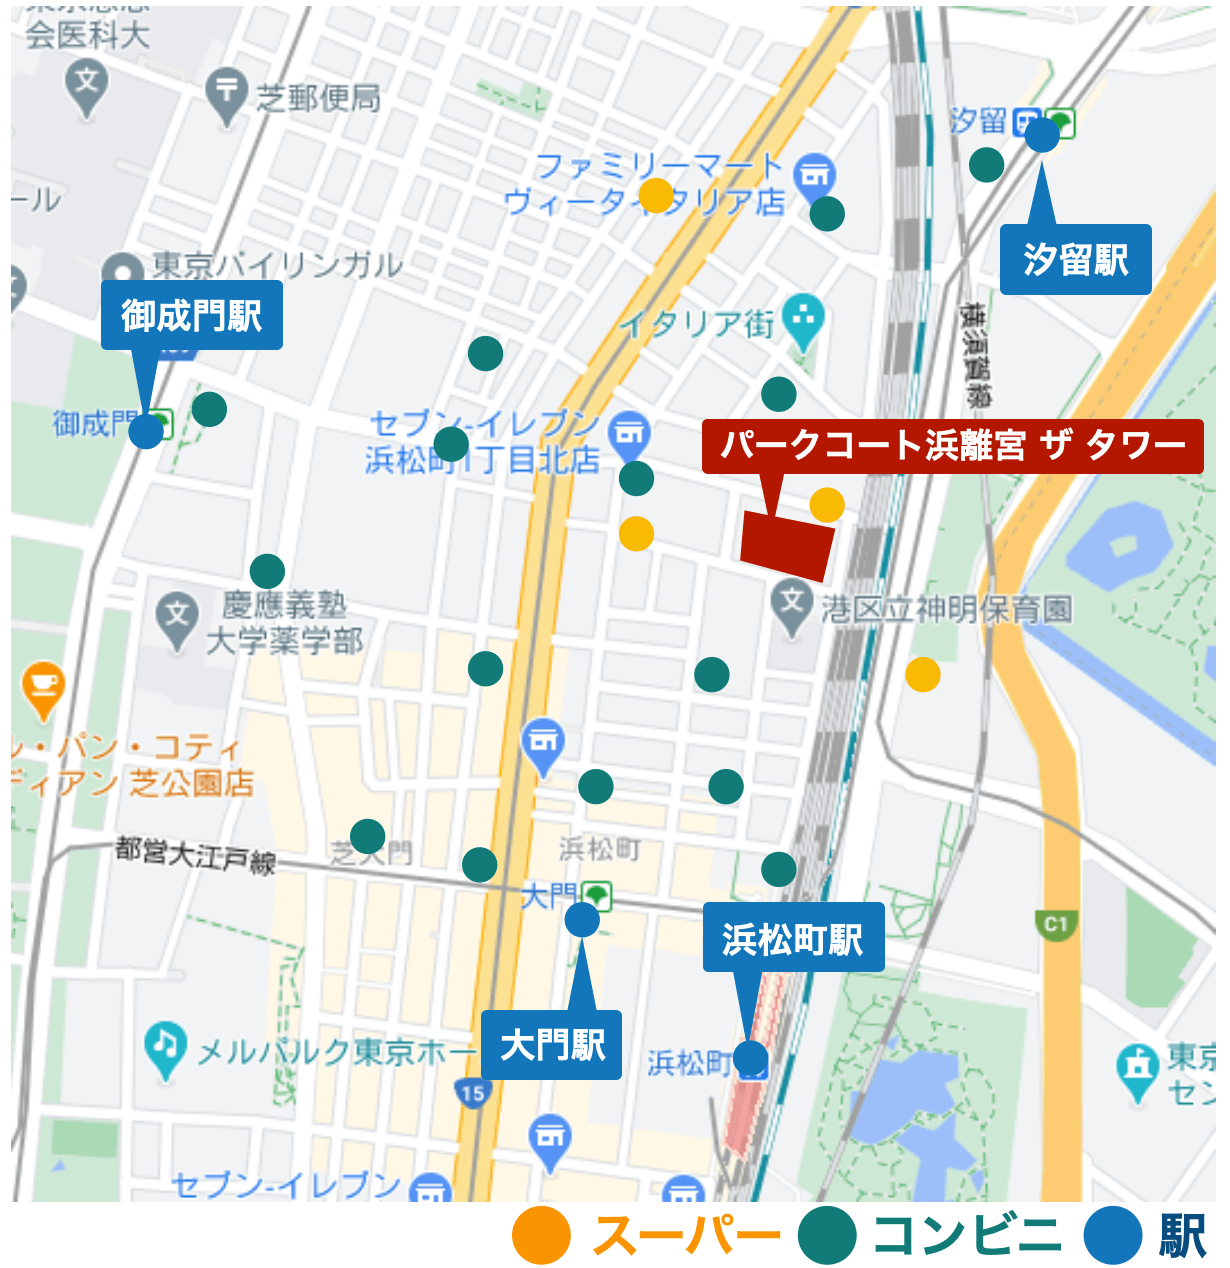 マンション周辺のお店の場所を示したGoogleマップ